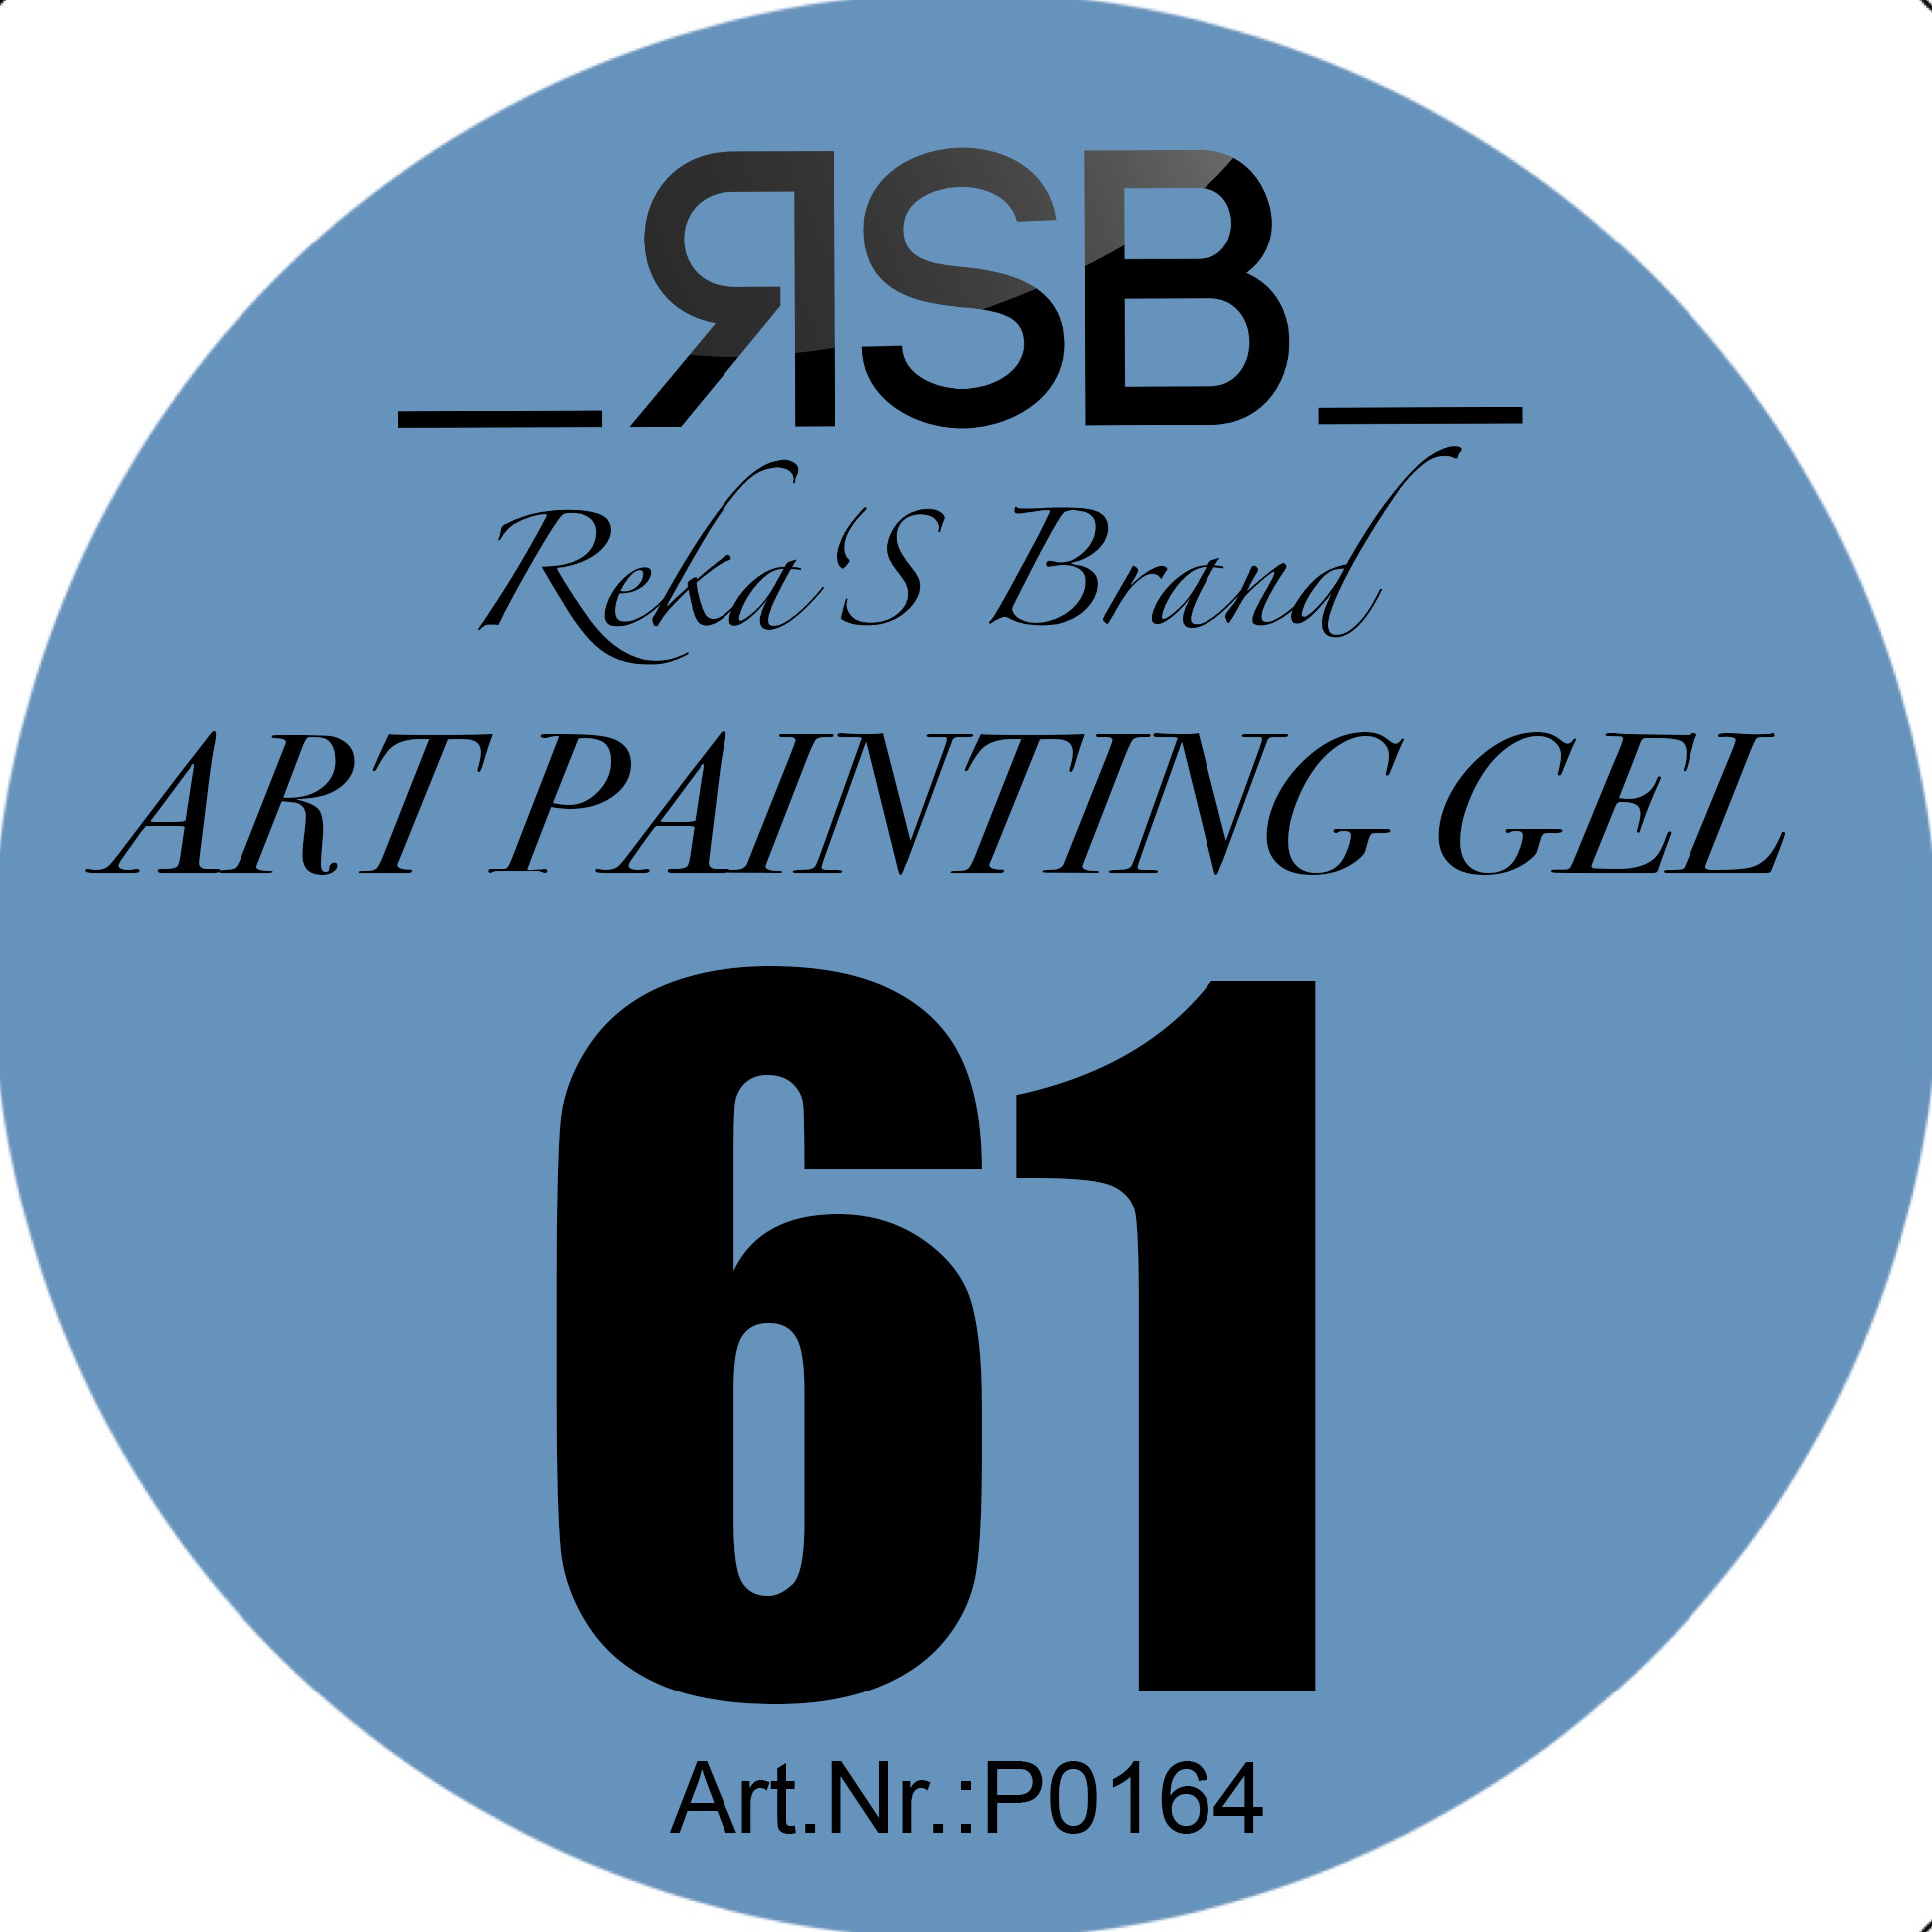 ART PAINTING GEL 61